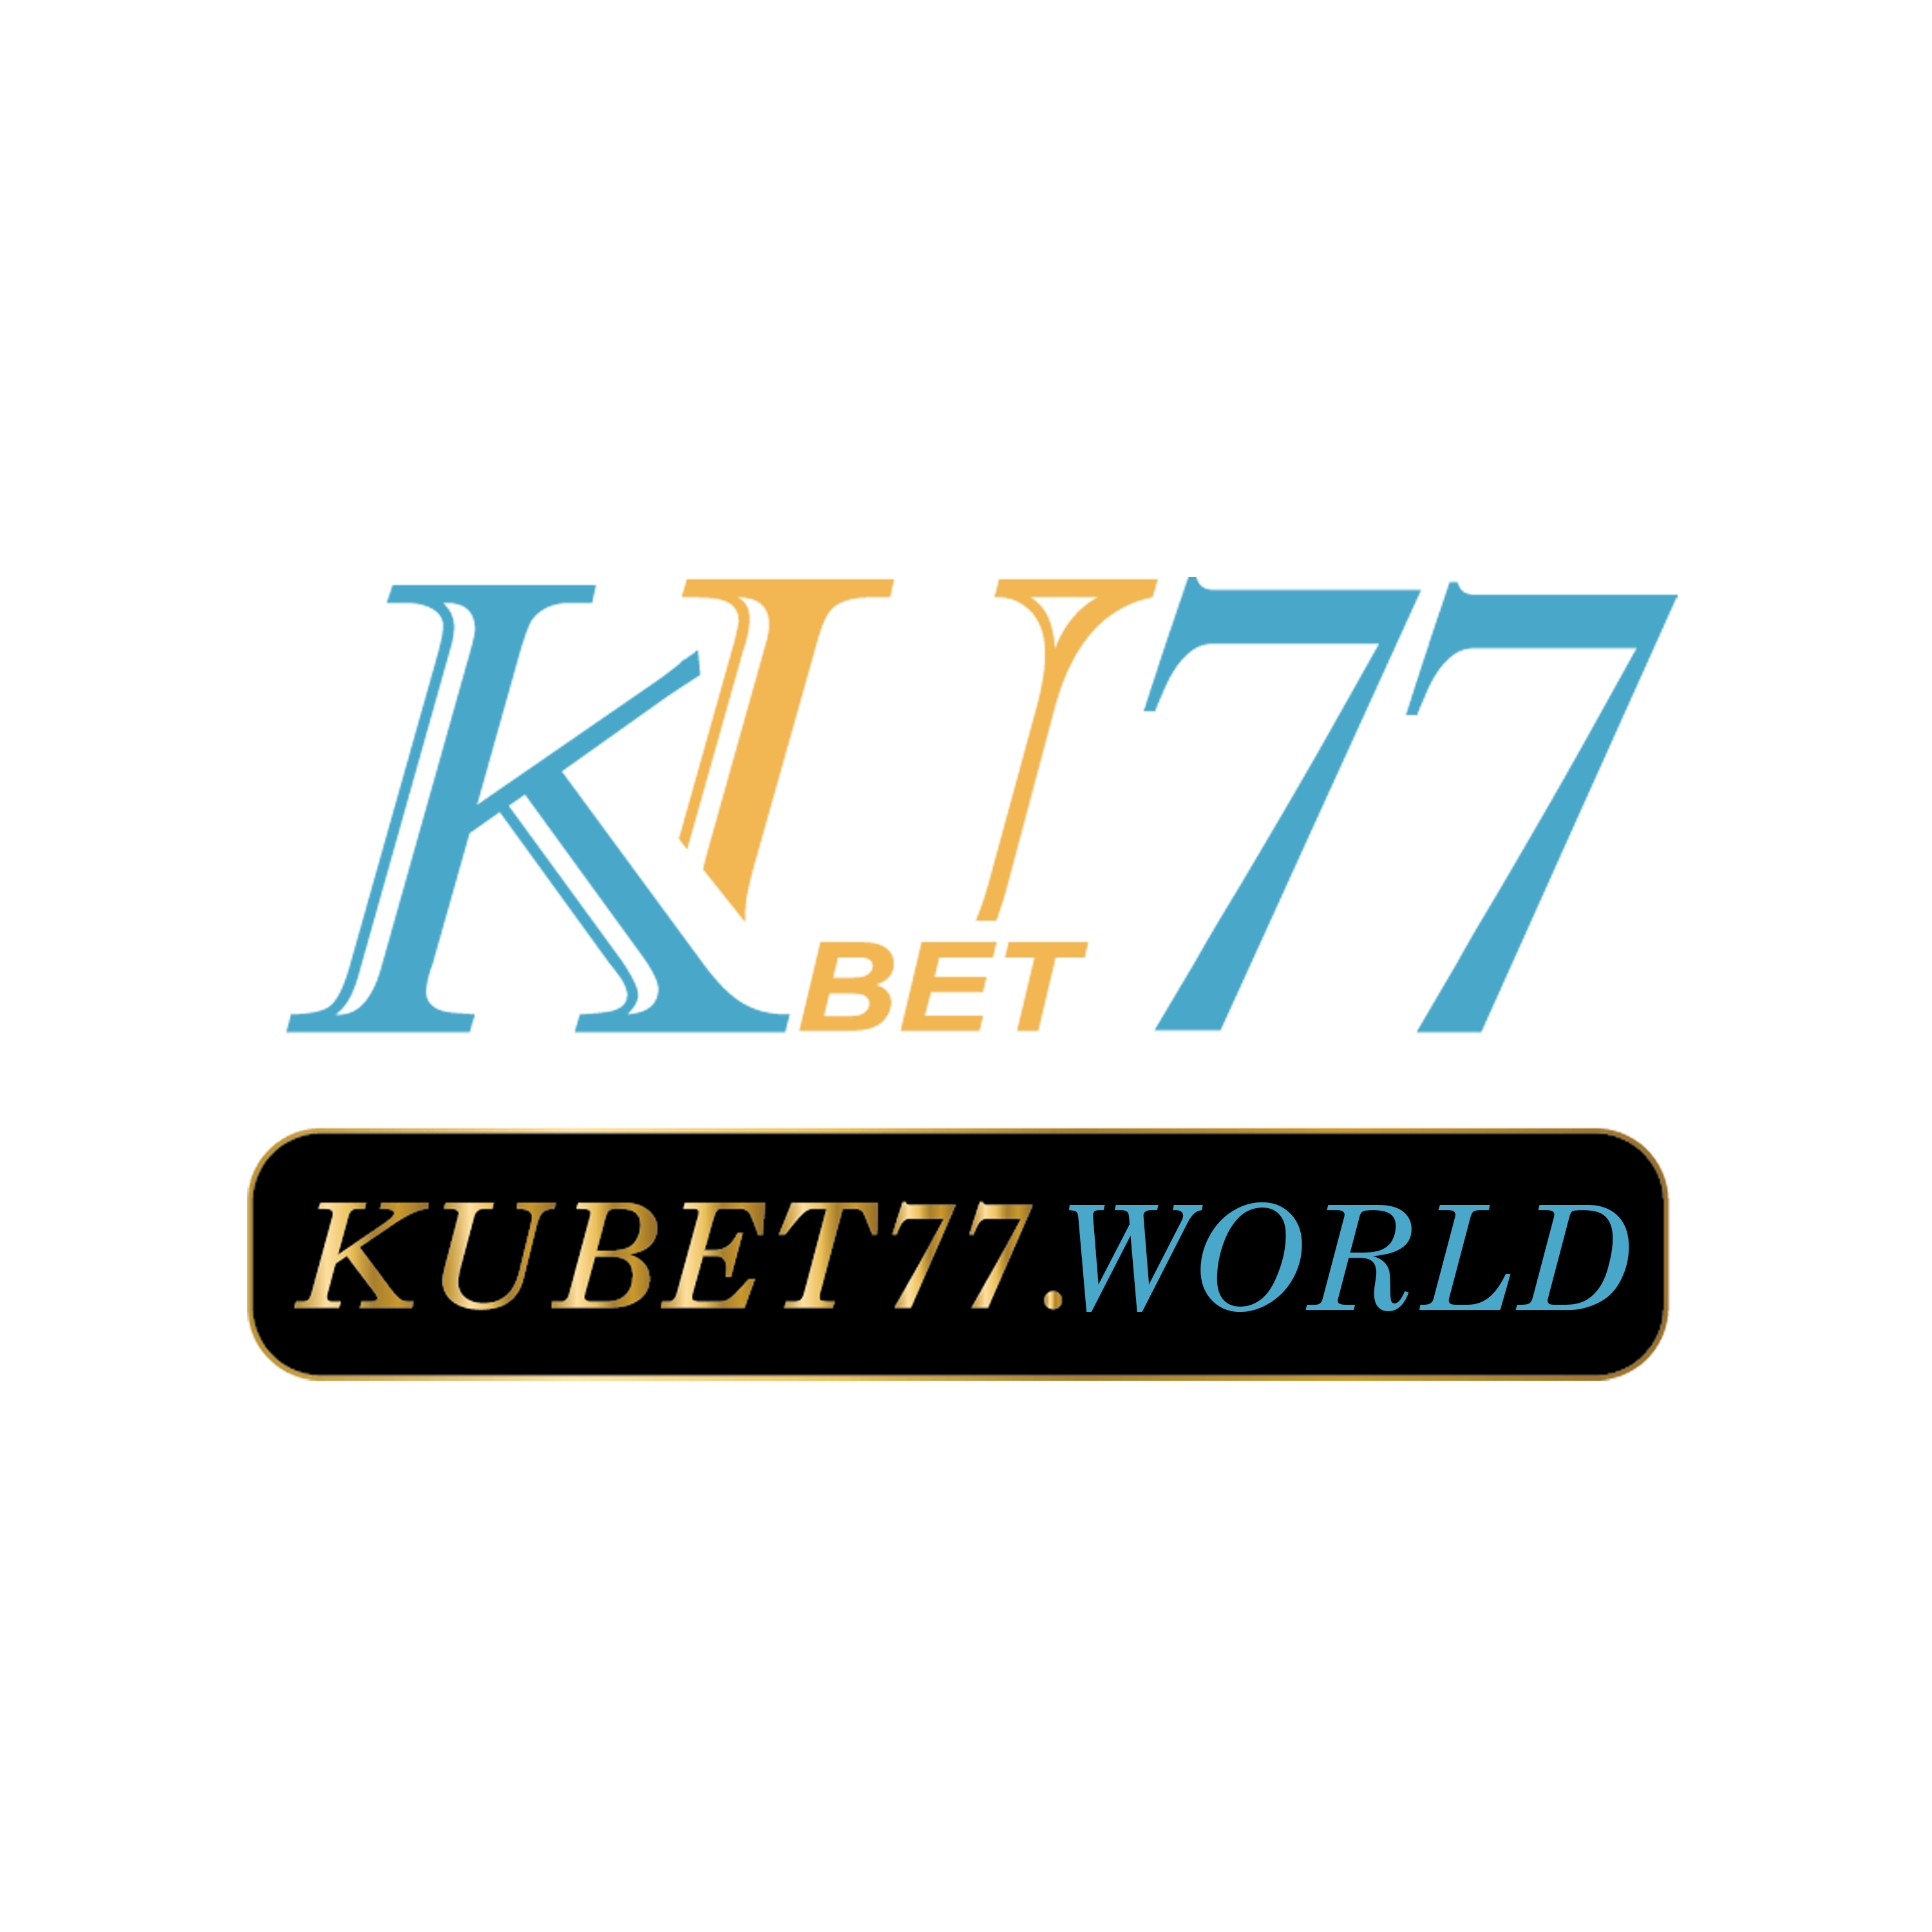 Logo Kubet77